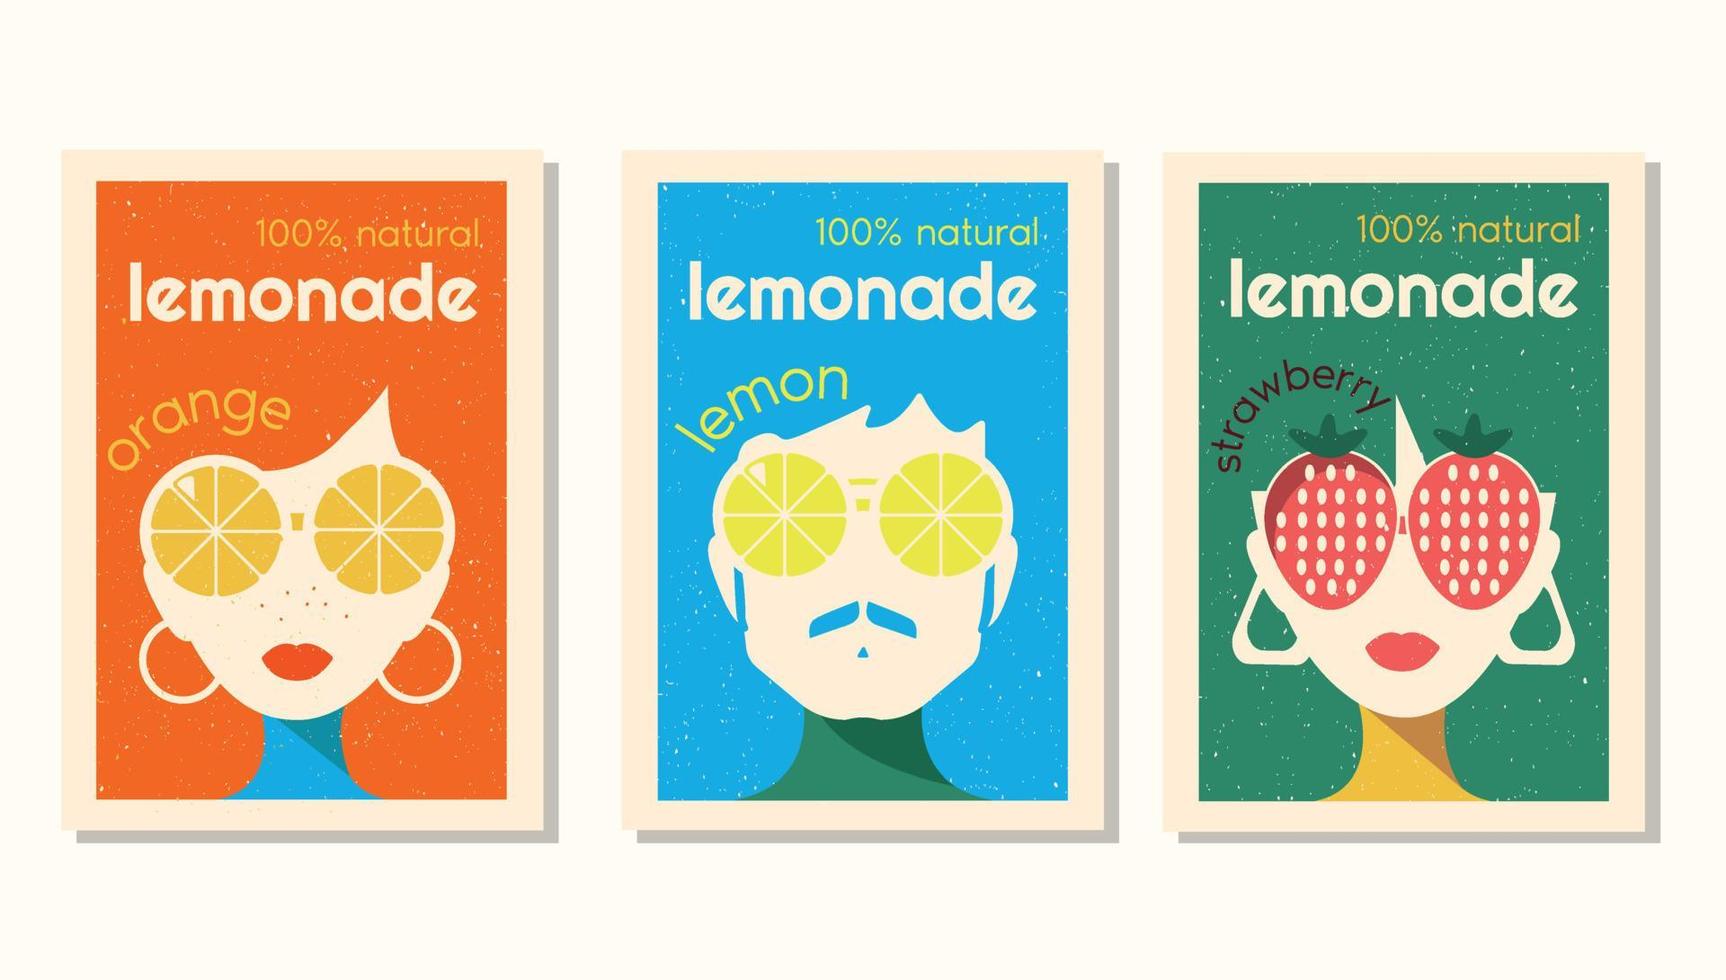 rótulo de vetor definido para limonada em estilo retrô. design de rótulo para limonada de morango, limão e laranja com personagens usando óculos grandes no estilo dos anos 70.